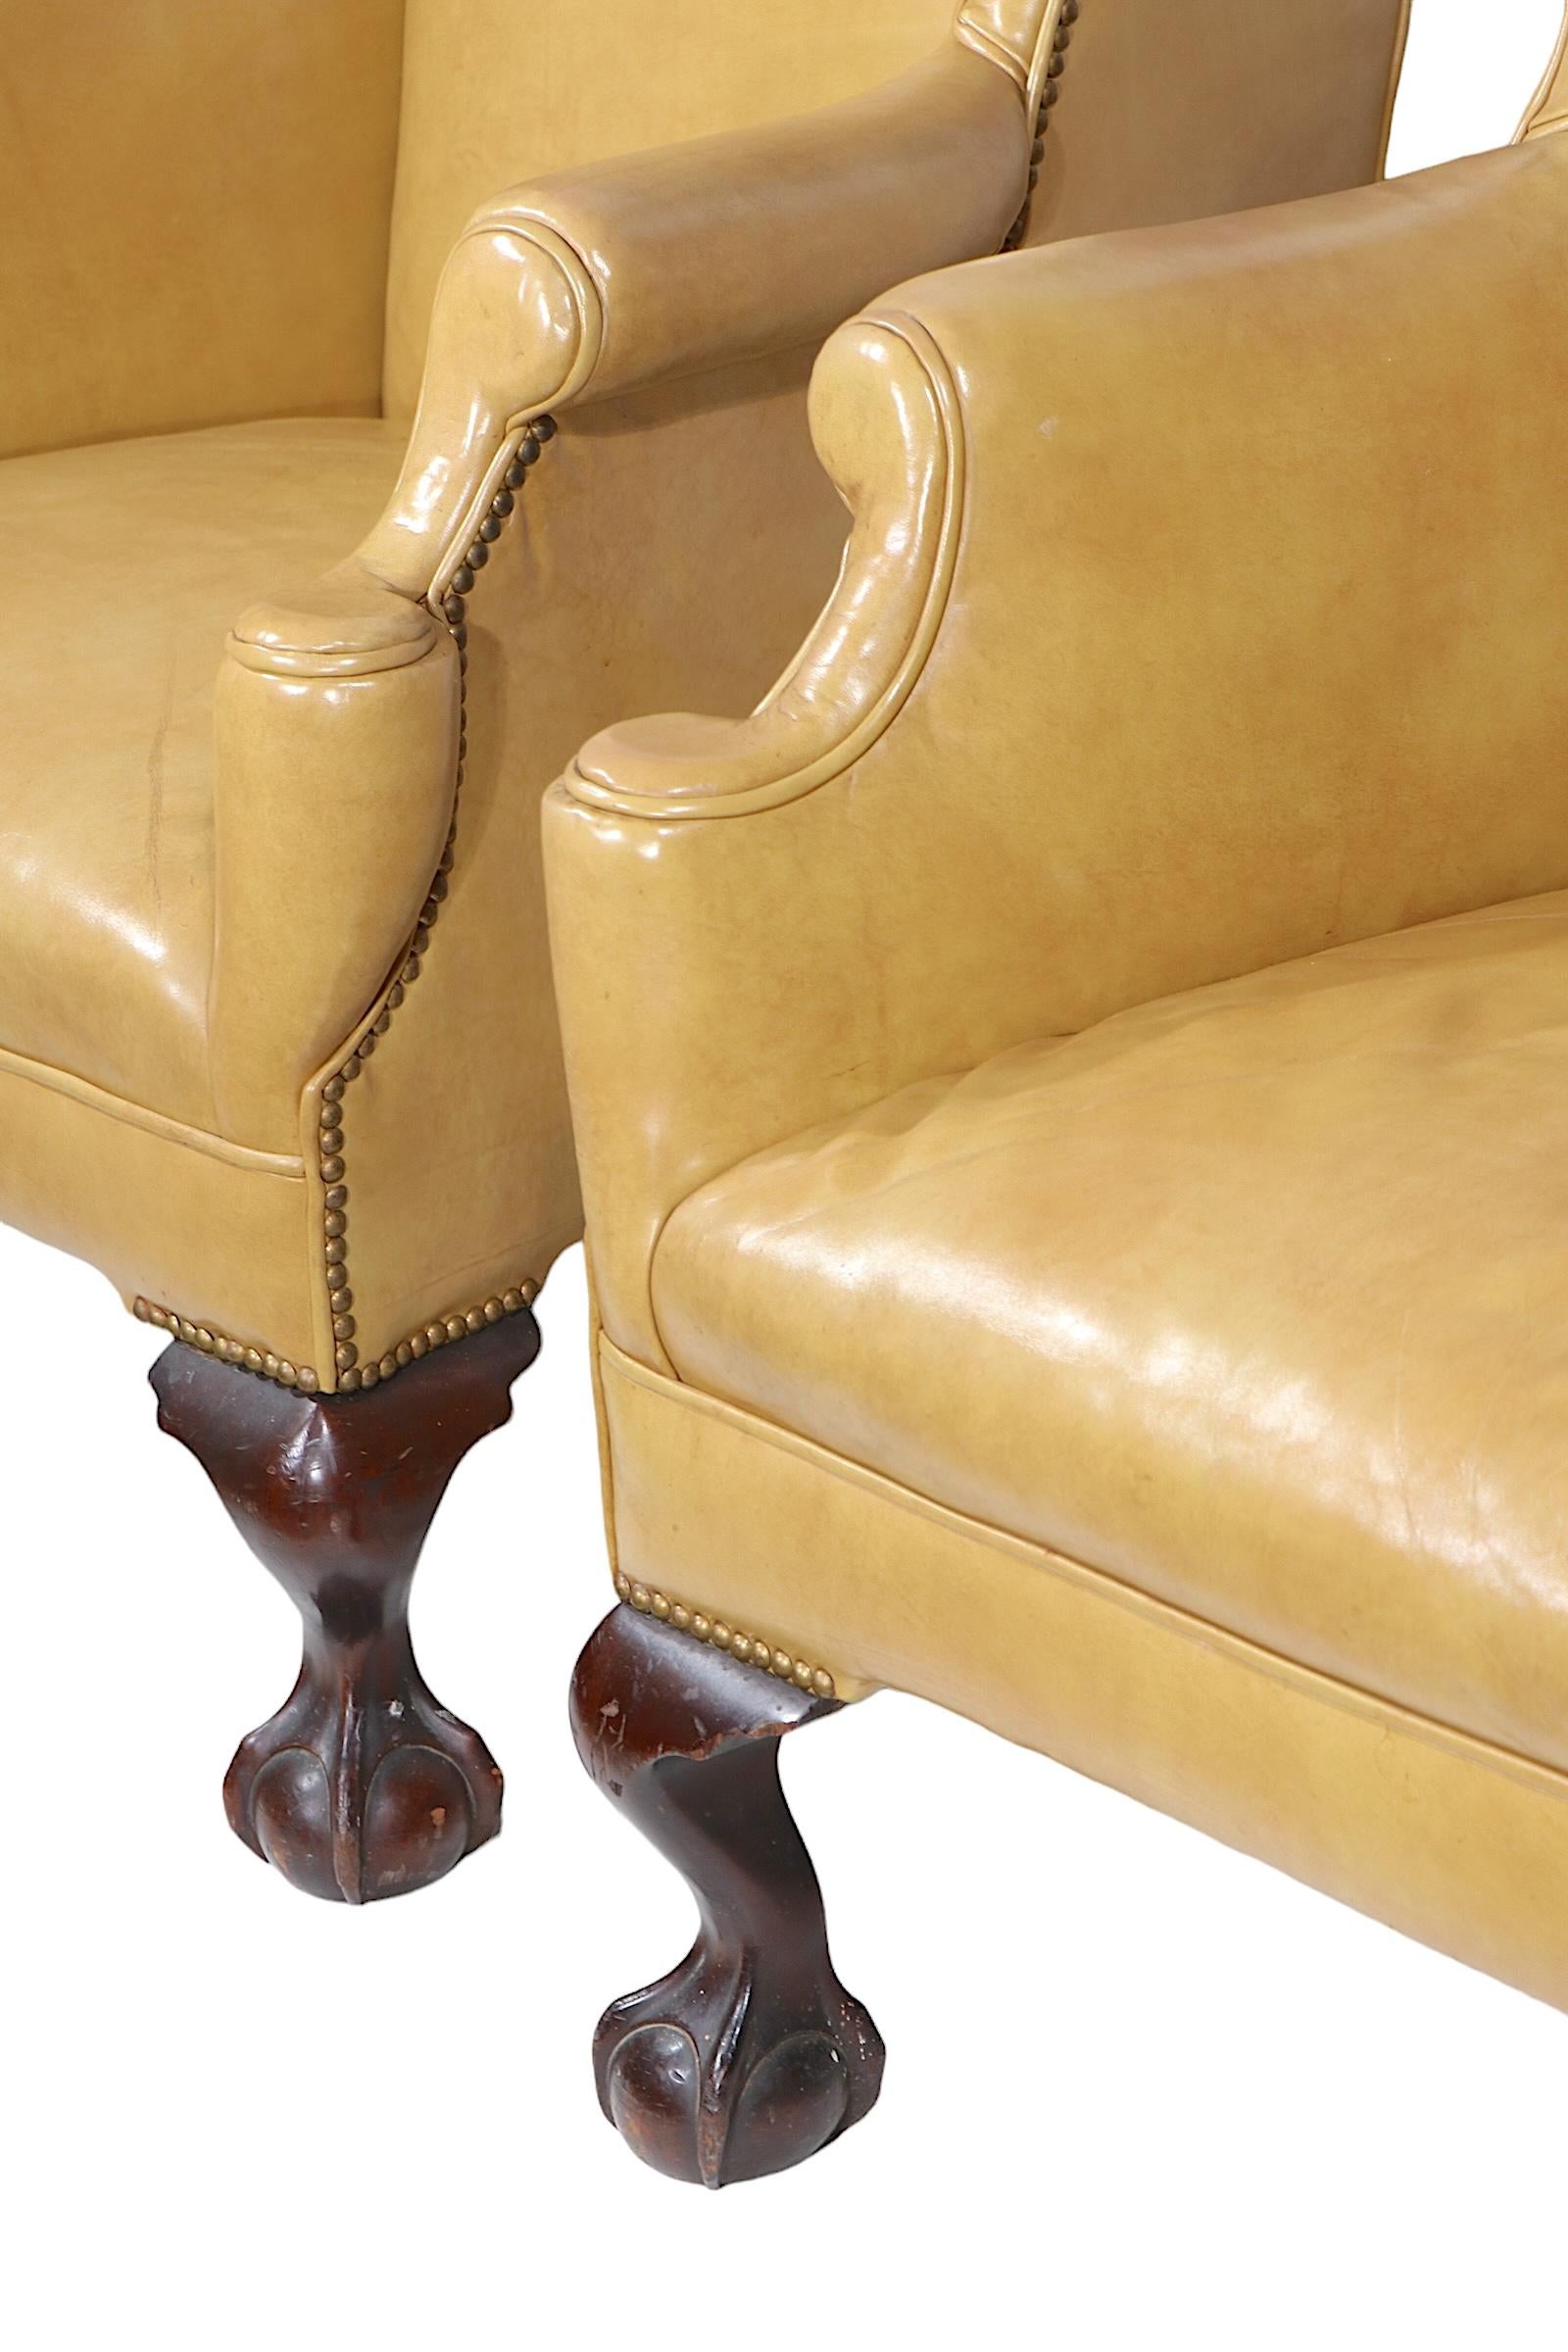 Außergewöhnliches Paar Ohrensessel, ursprünglich aus dem historischen Fort William Henry Hotel in Lake George NY. Die Stühle sind mit Leder gepolstert und mit dekorativen Nieten besetzt, mit mutigen Kugel- und Krallenfüßen. Die Stühle sind sehr gut